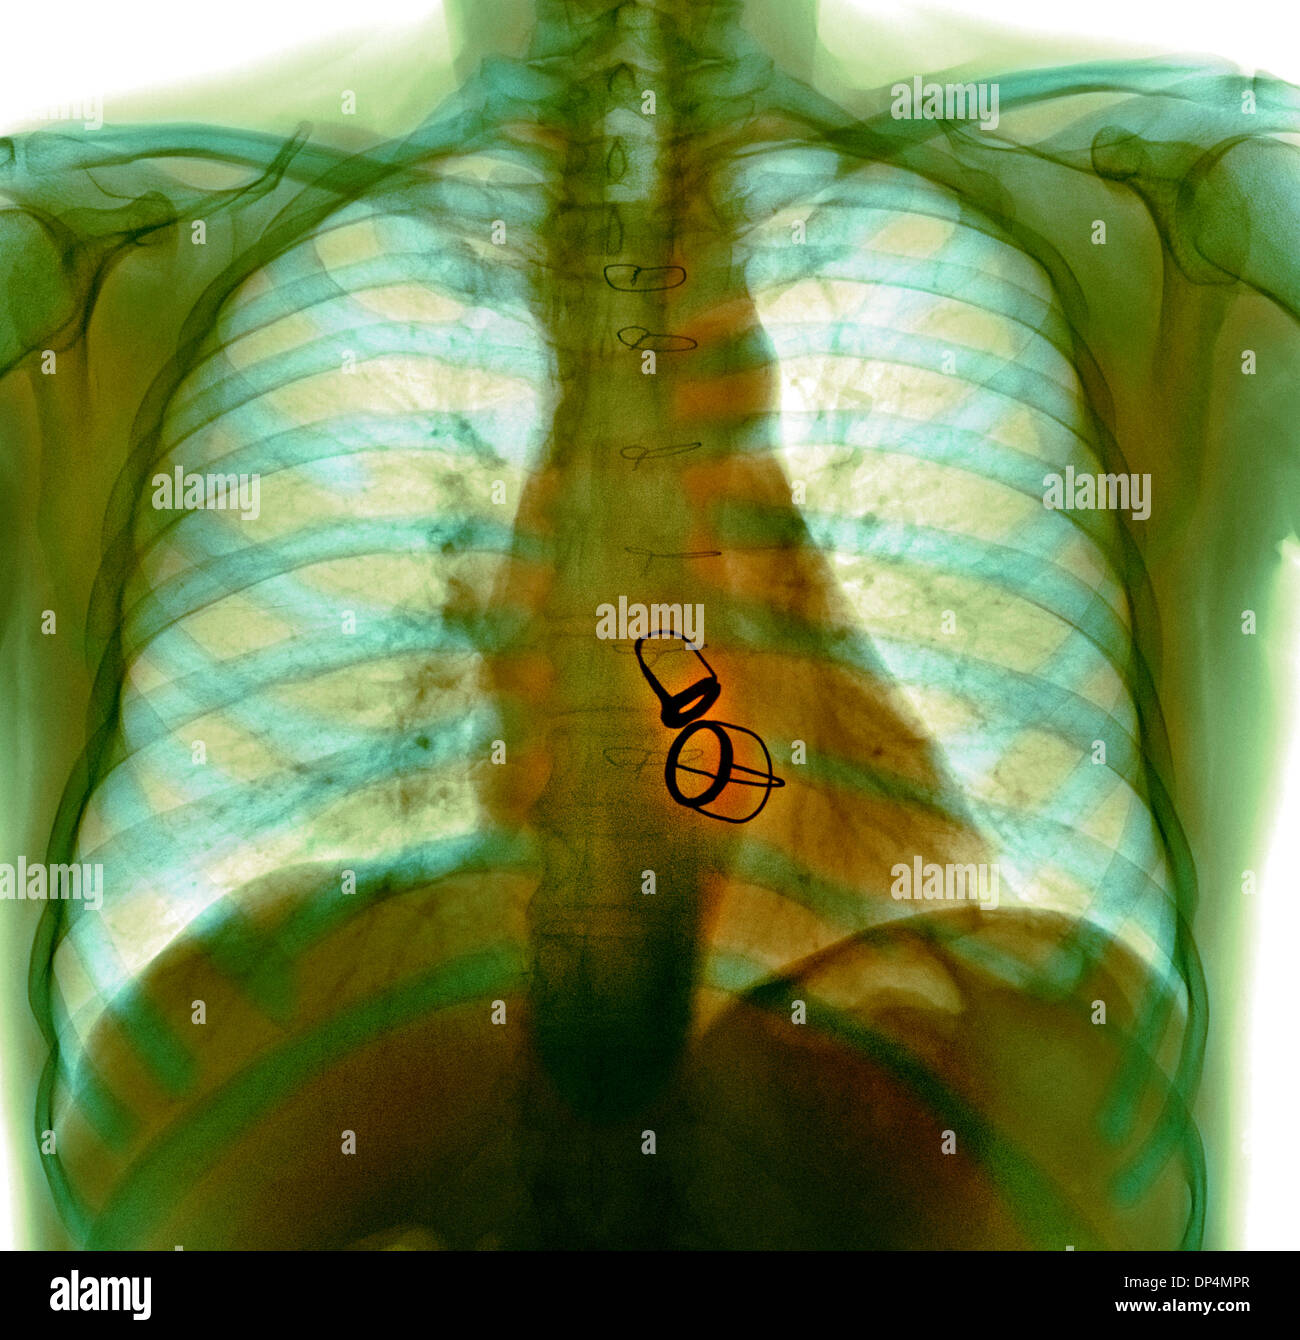 Prosthetic heart valves, X-ray Stock Photo